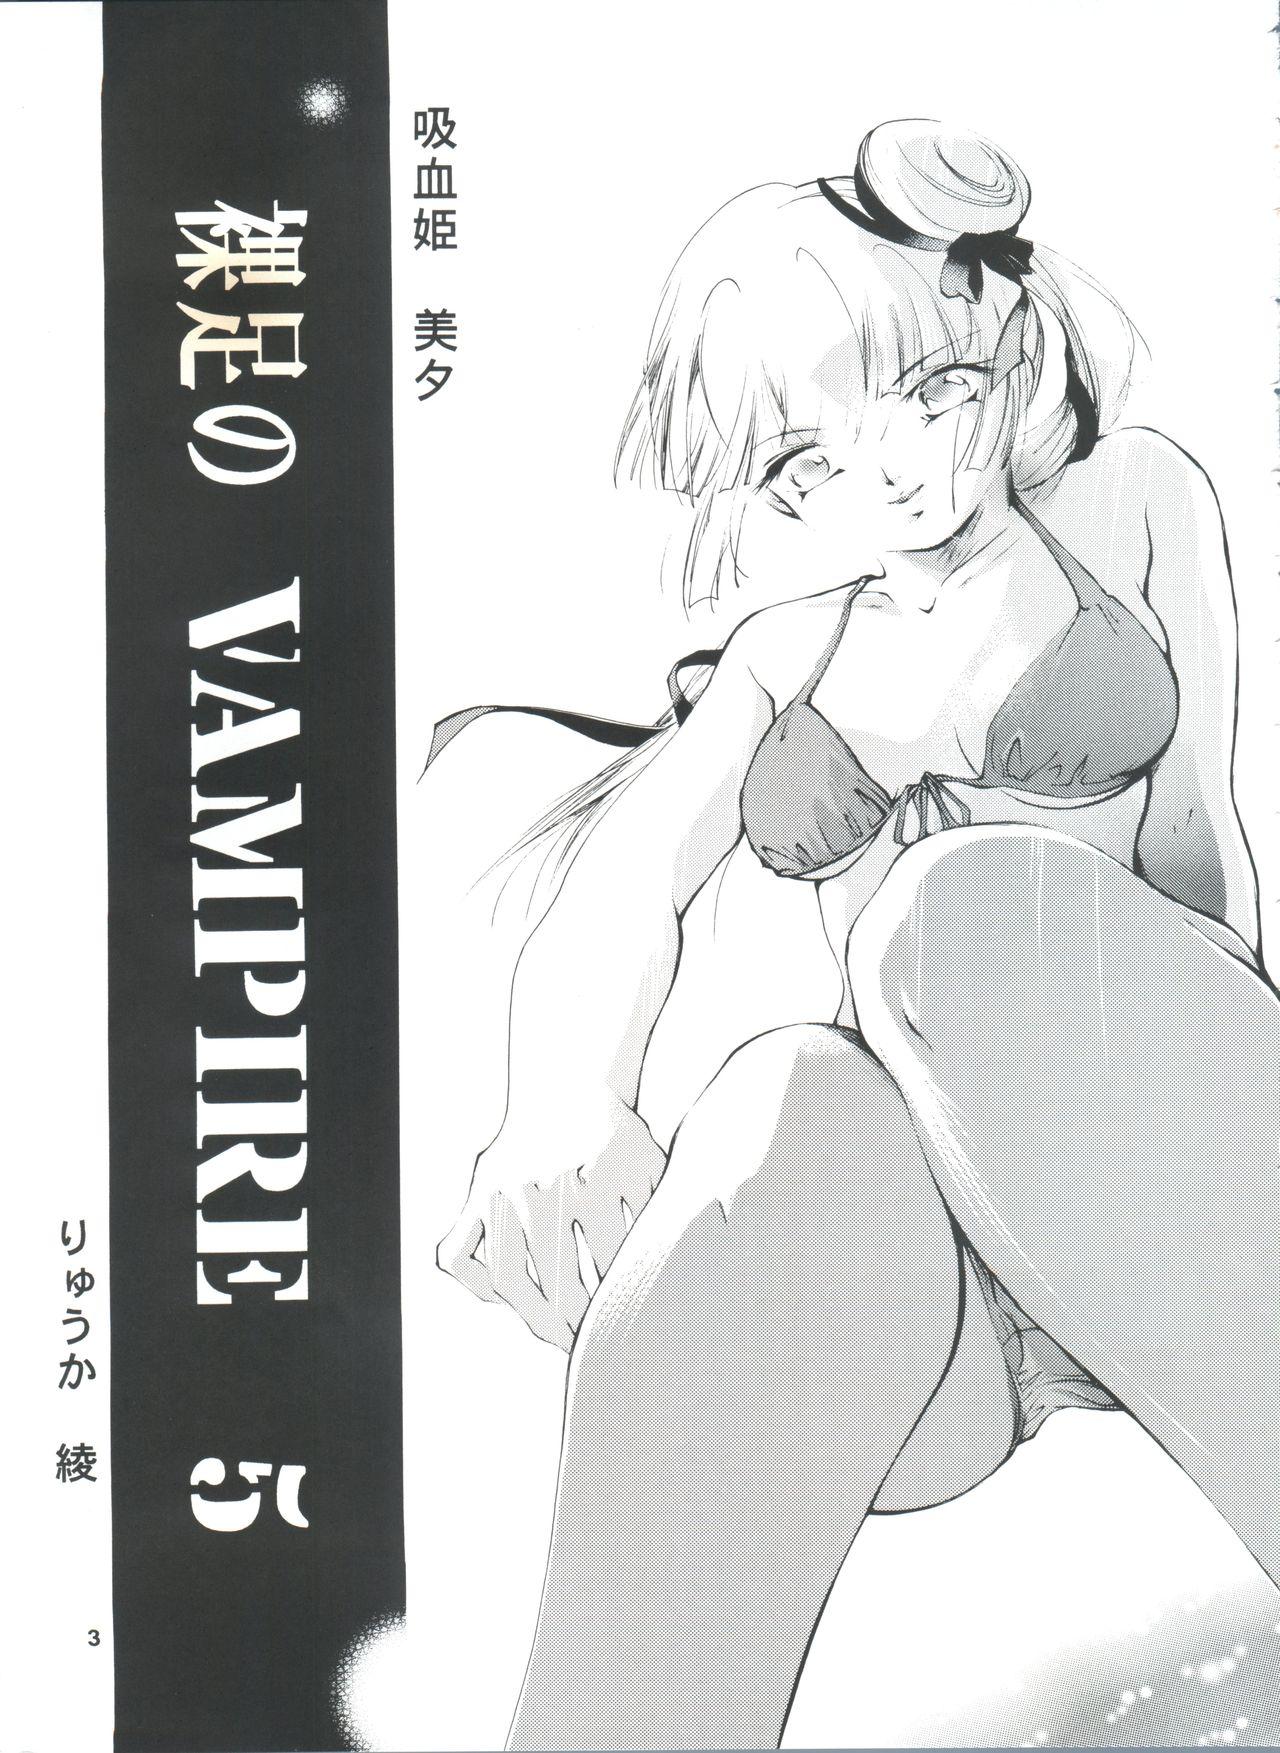 Nudity Hadashi no Vampire 5 - Vampire princess miyu Hardsex - Page 2